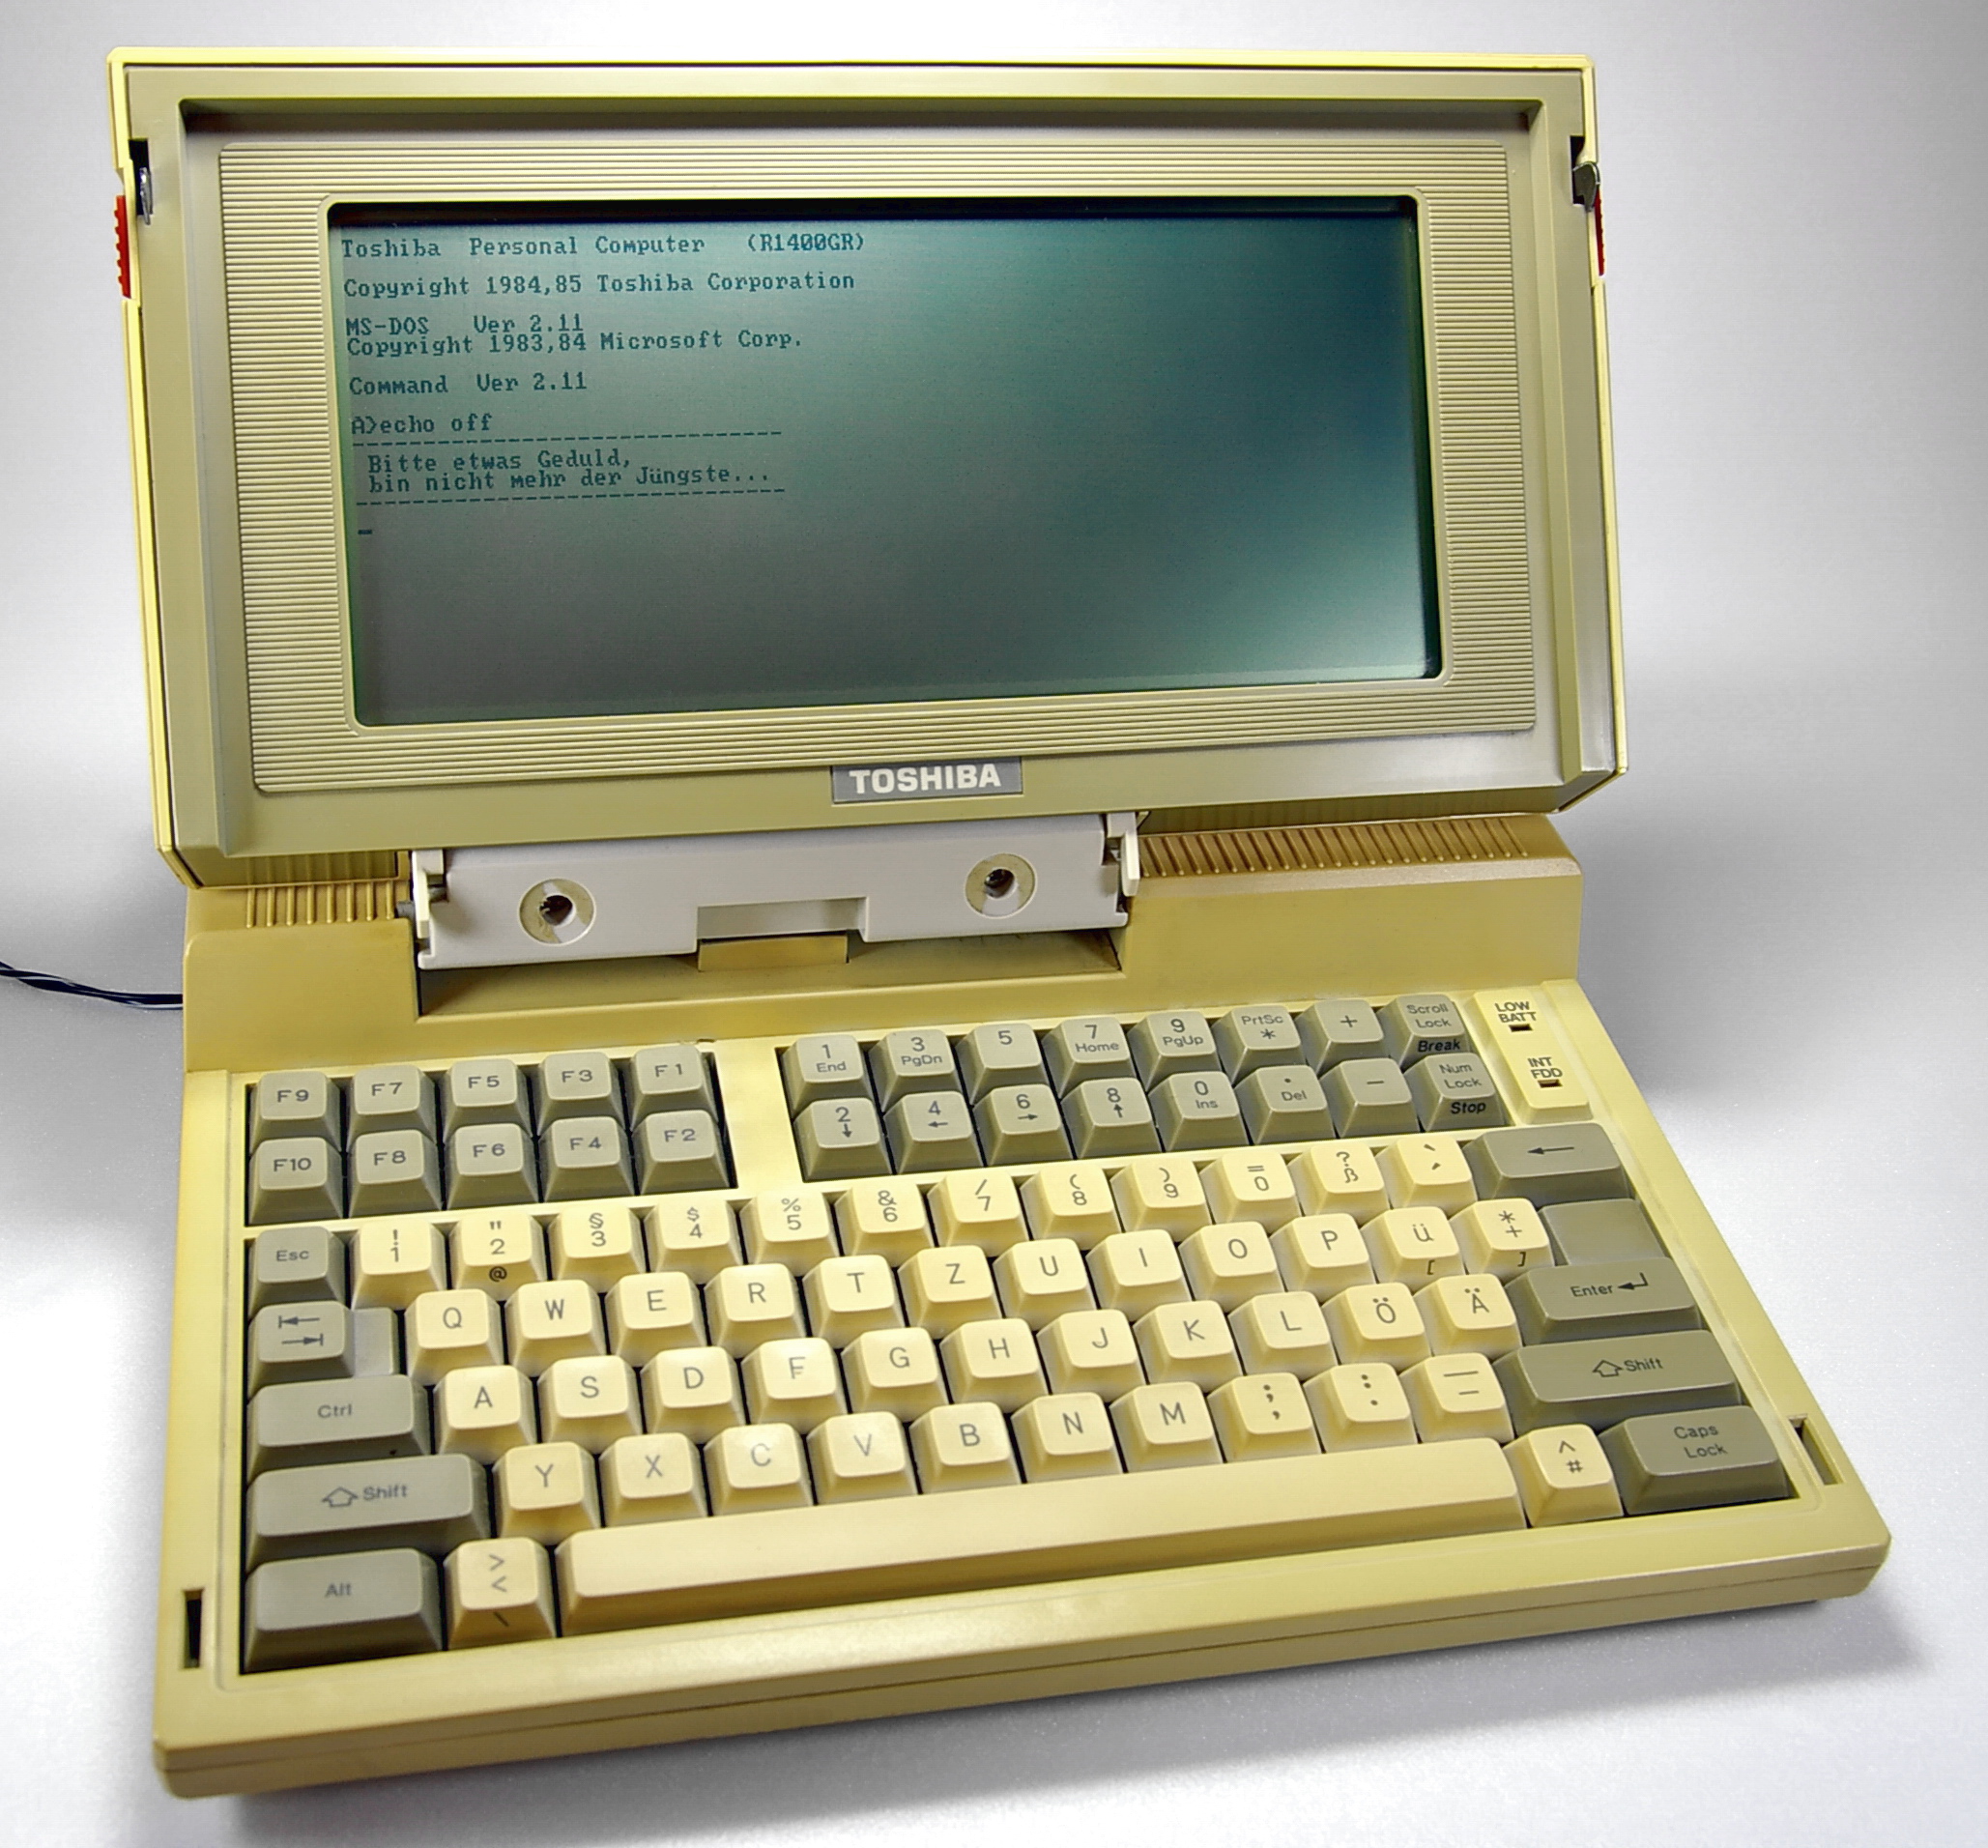 Unsatisfactory Greeting Cornwall Laptopurile Toshiba – 25 de ani de inovaţie şi experienţă - One-IT blog